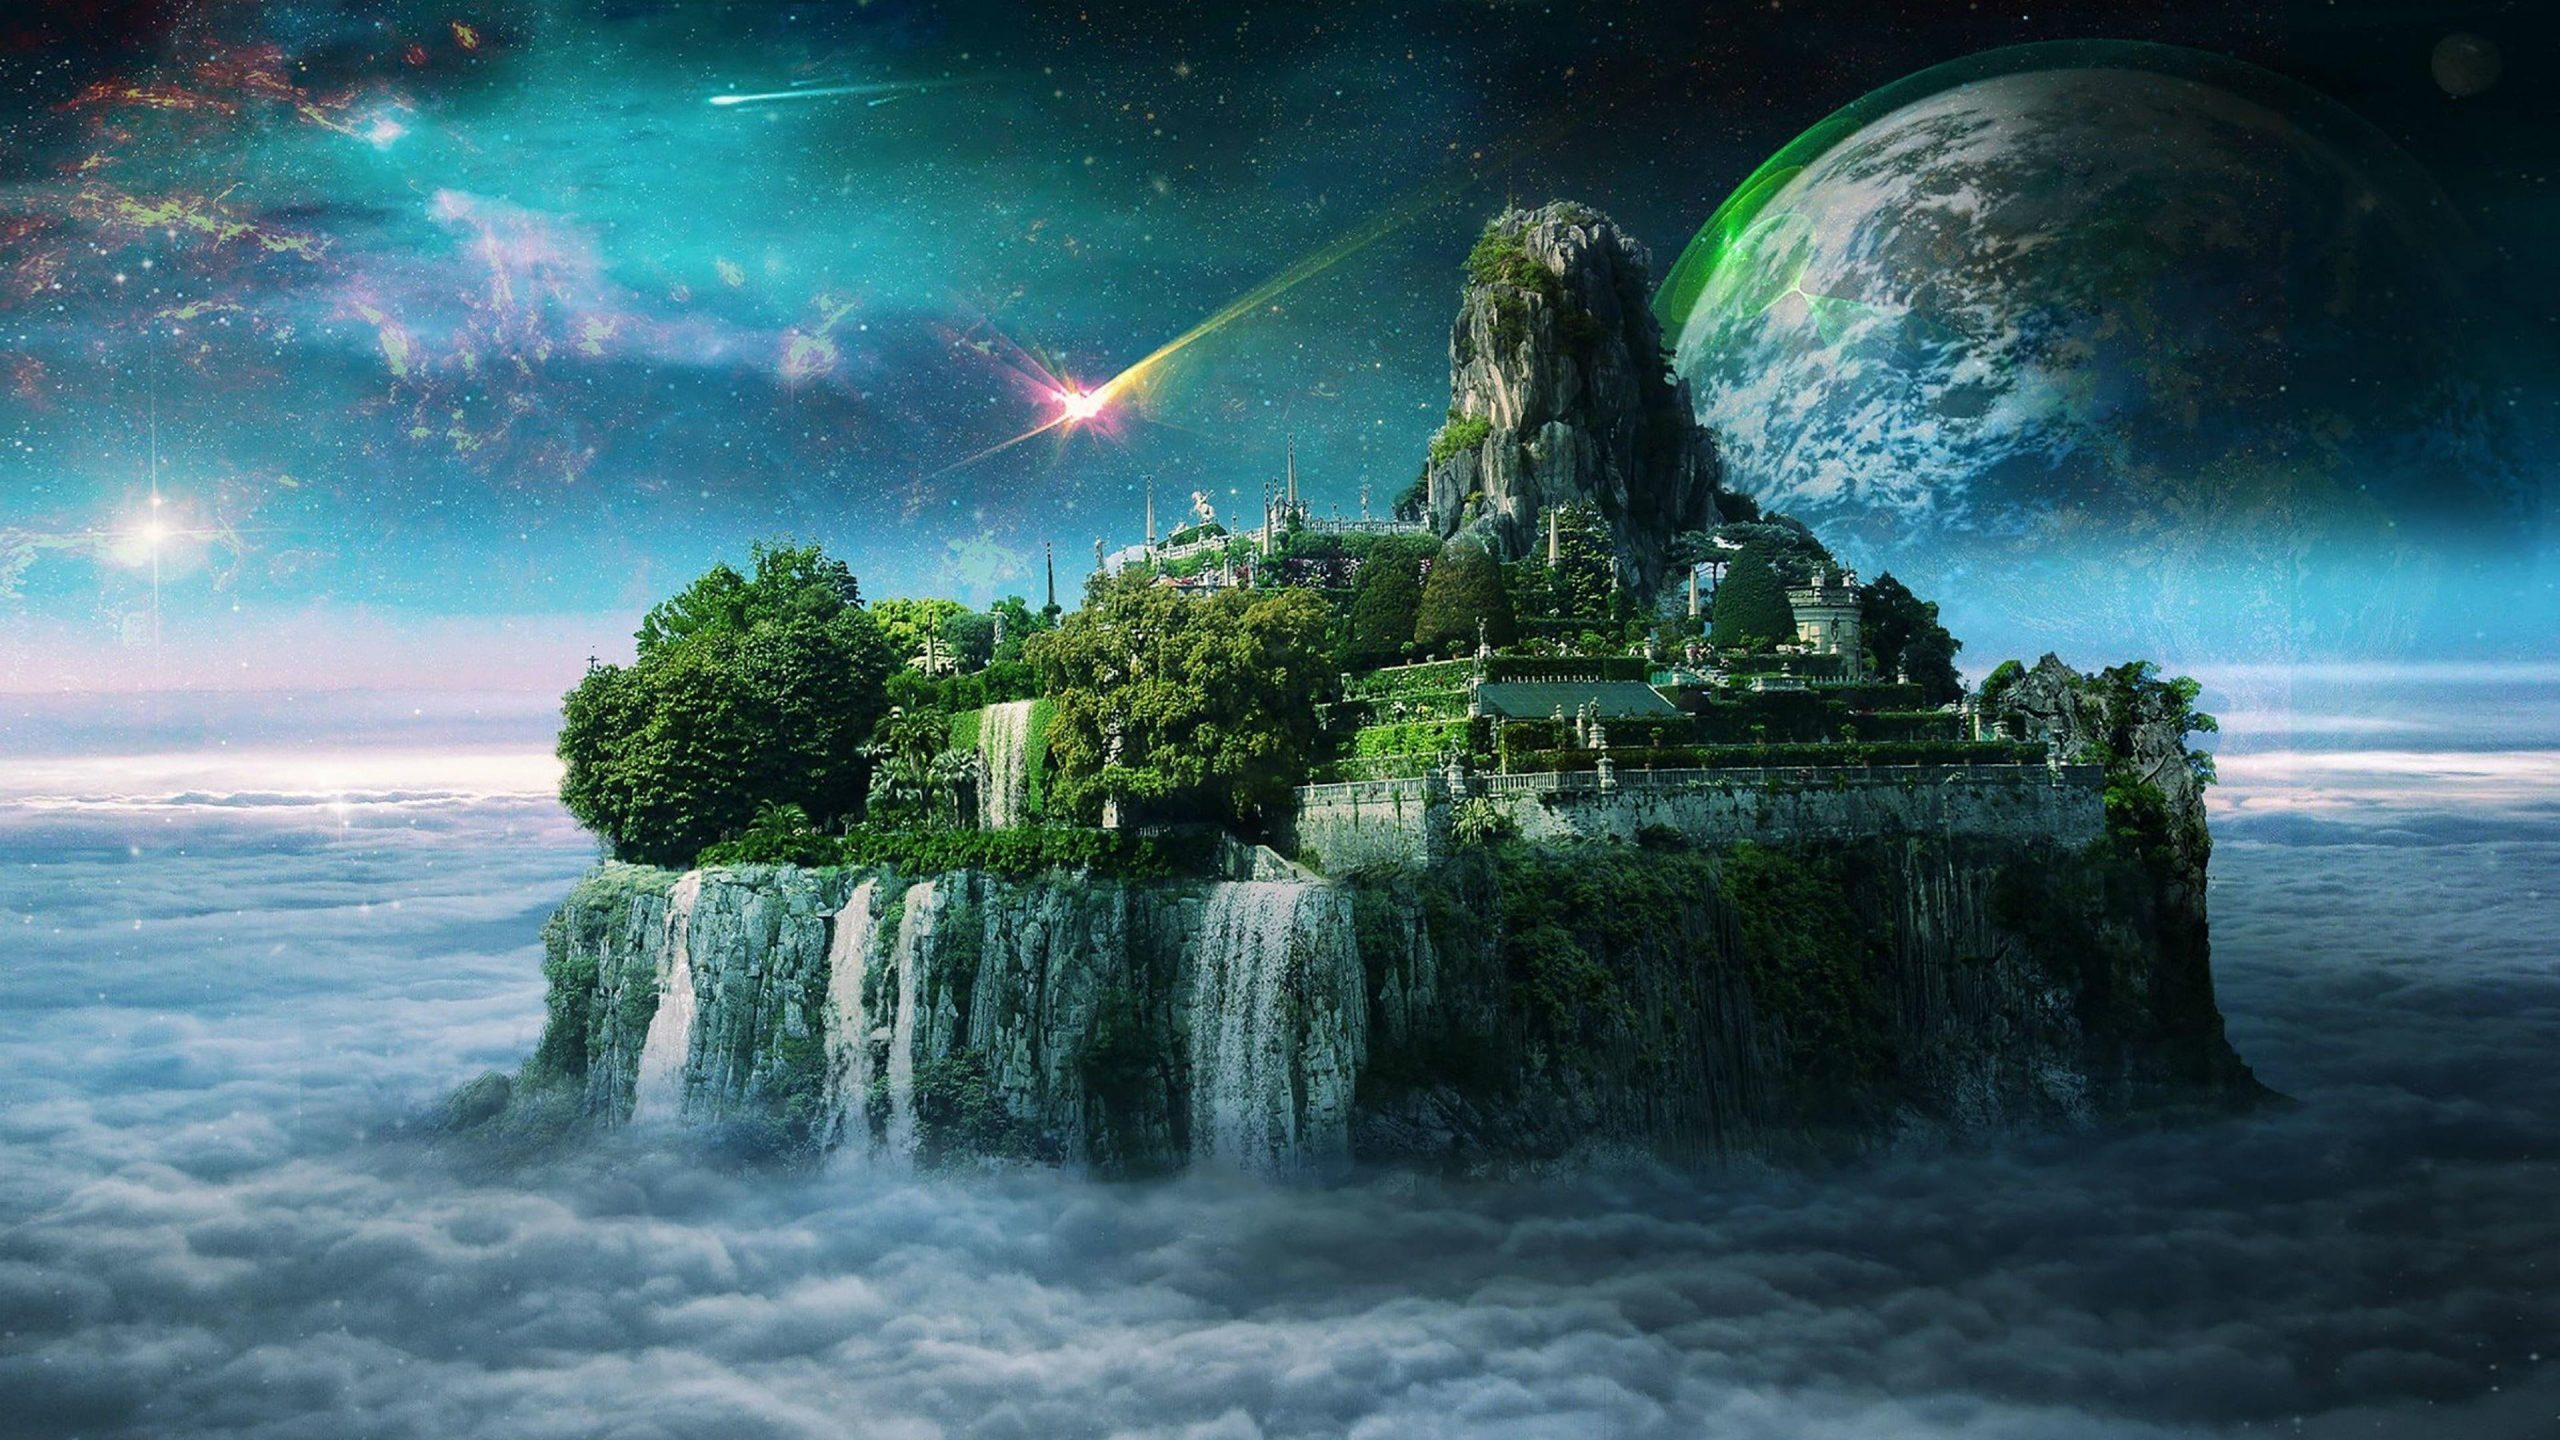 Fantasy art wallpaper, space art, waterfall, island, castle, city, sky